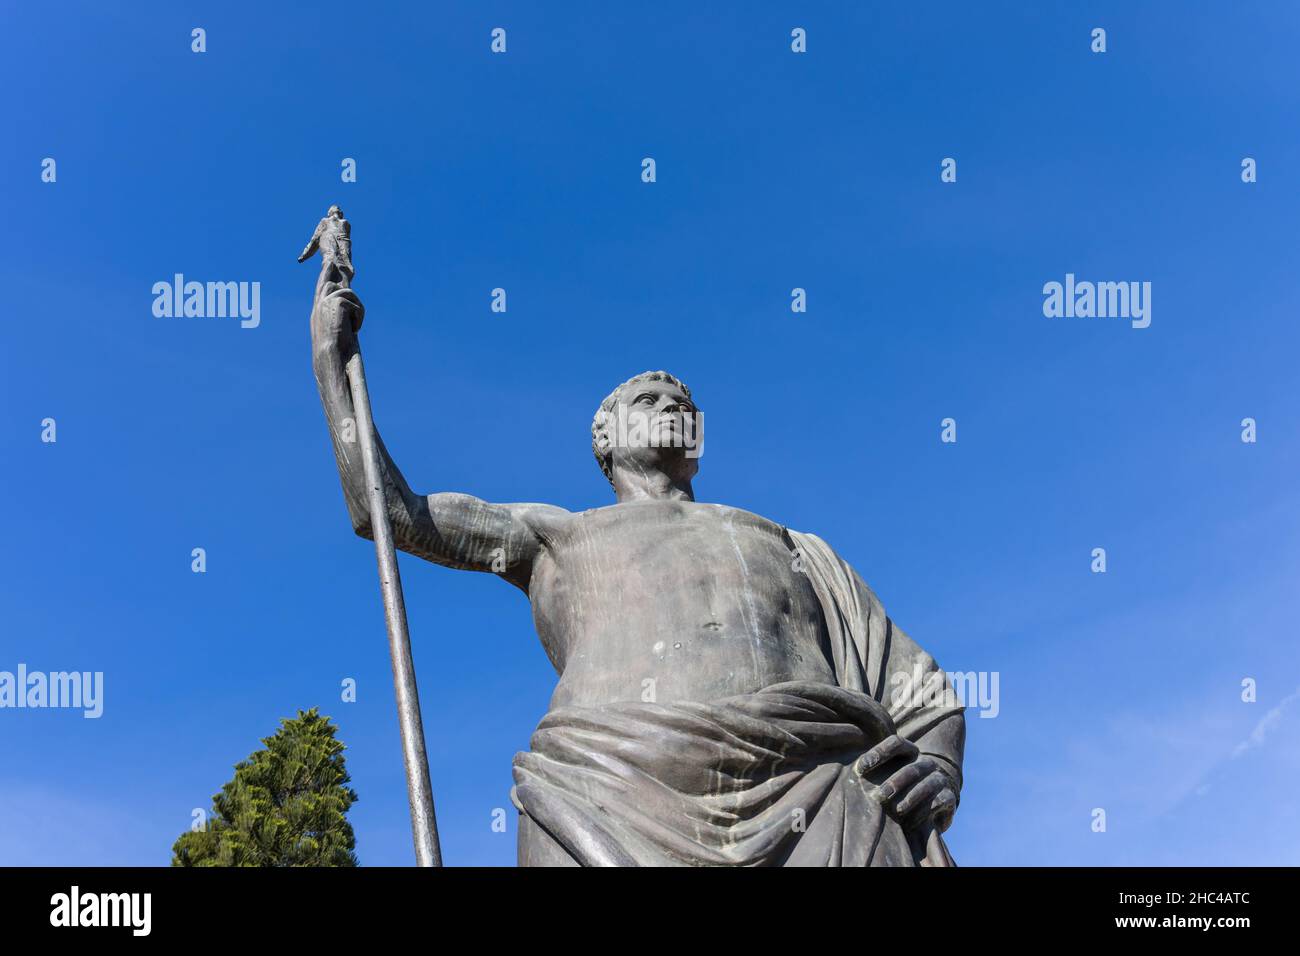 Statue of Attalus II in Antalya, Turkey Stock Photo